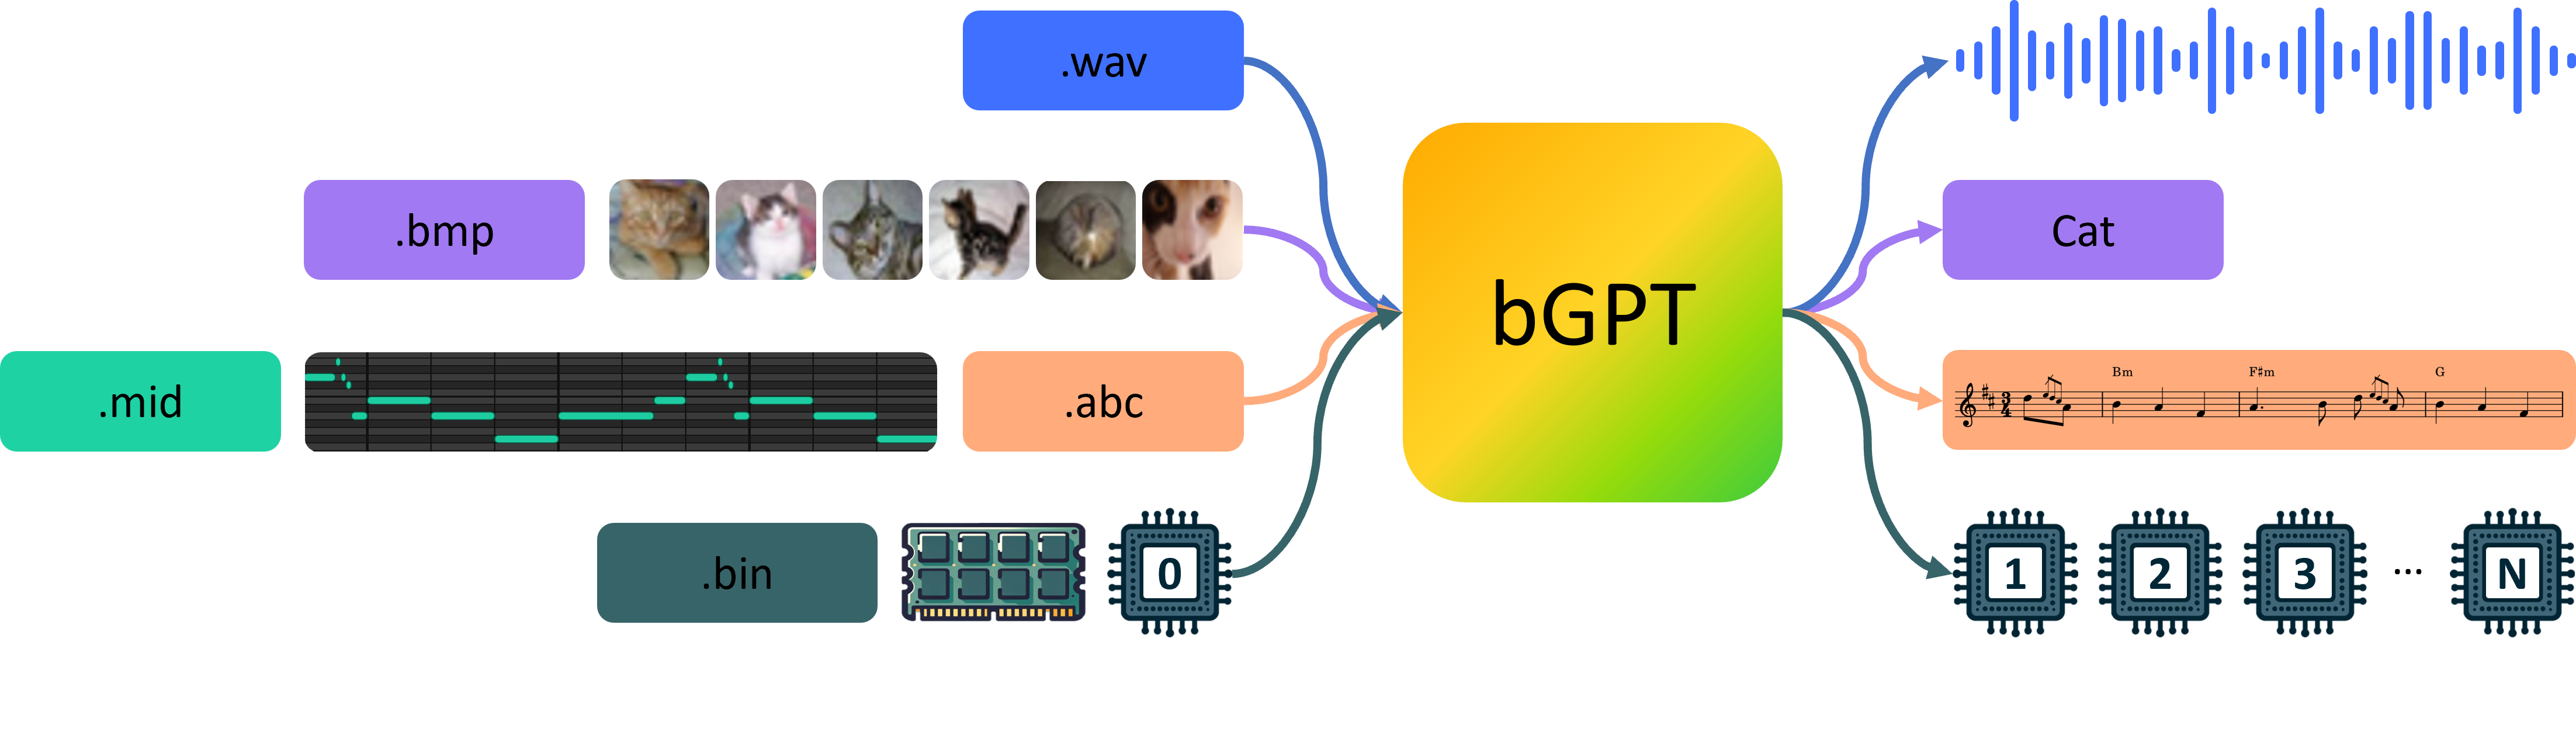 The bGPT framework